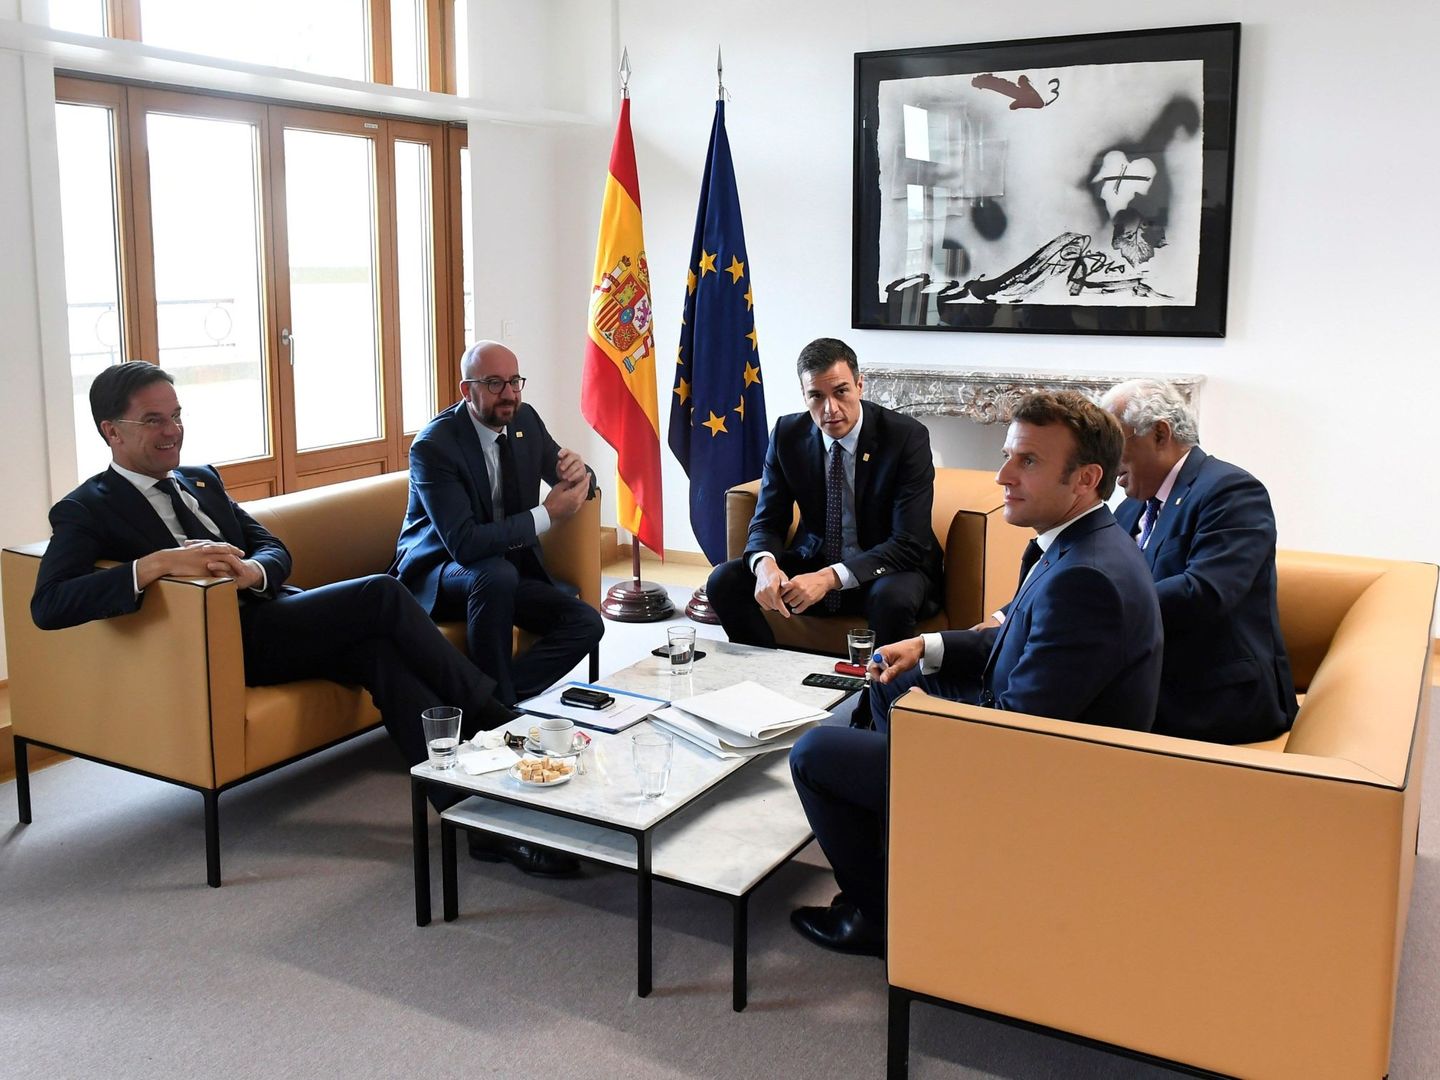 El presidente del Gobierno español en funciones, Pedro Sánchez, junto a primeros ministros europeos, incluido António Costa, a su izquierda. (EFE)